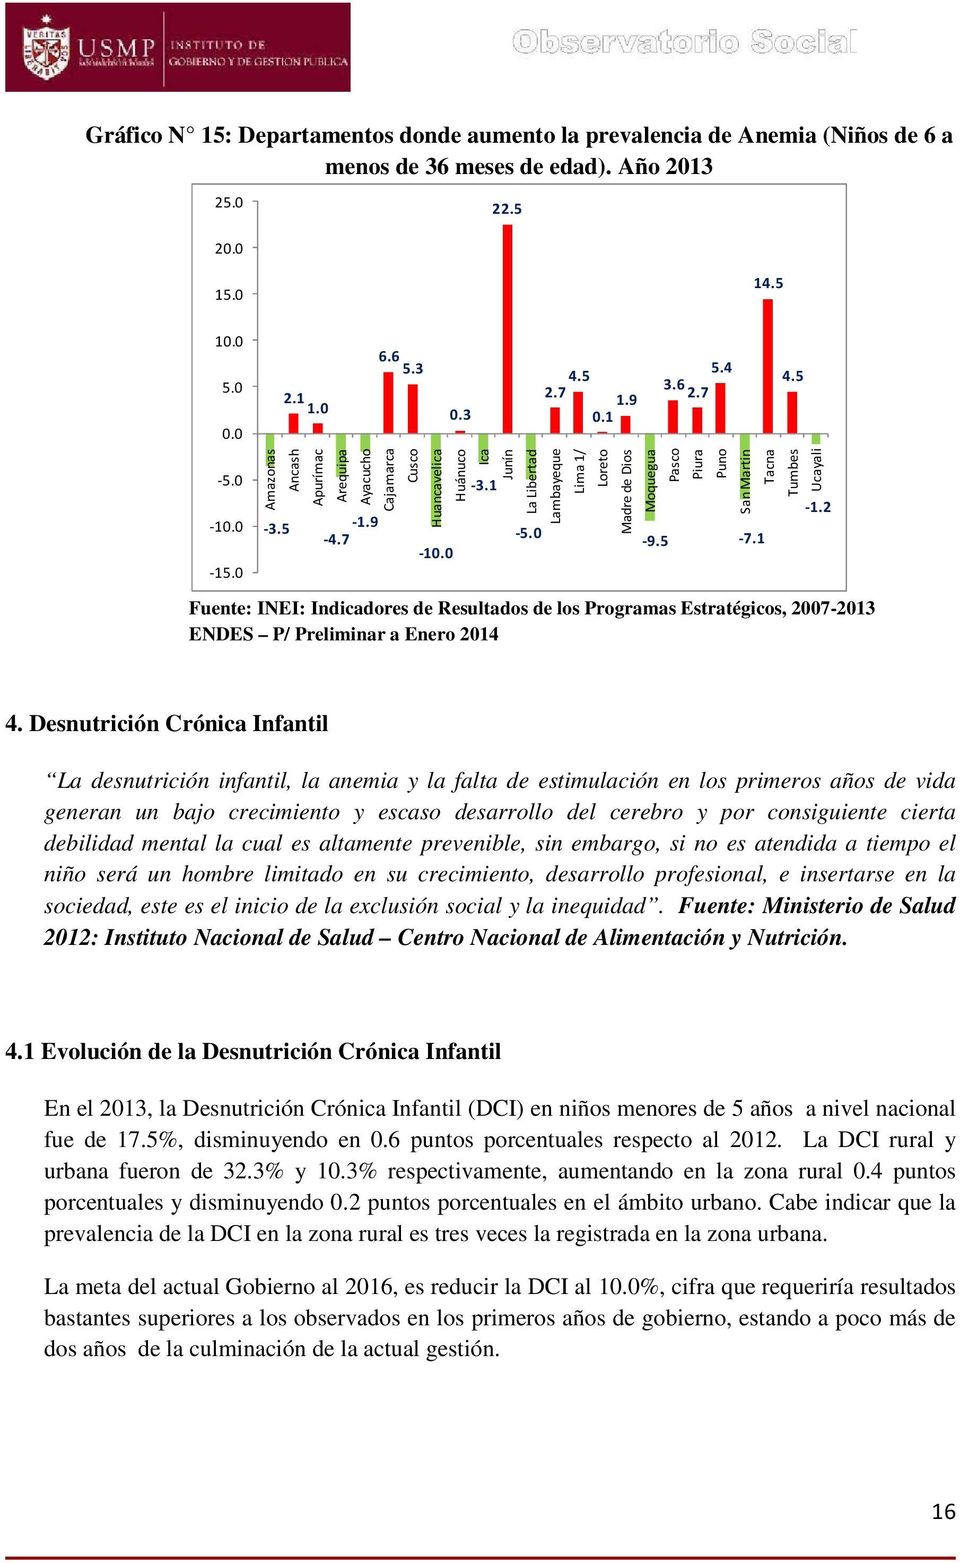 0 Fuente: INEI: Indicadores de Resultados de los Programas Estratégicos, 2007-2013 ENDES P/ Preliminar a Enero 2014 Lambayeque Lima 1/ Loreto Madre de Dios Moquegua -9.